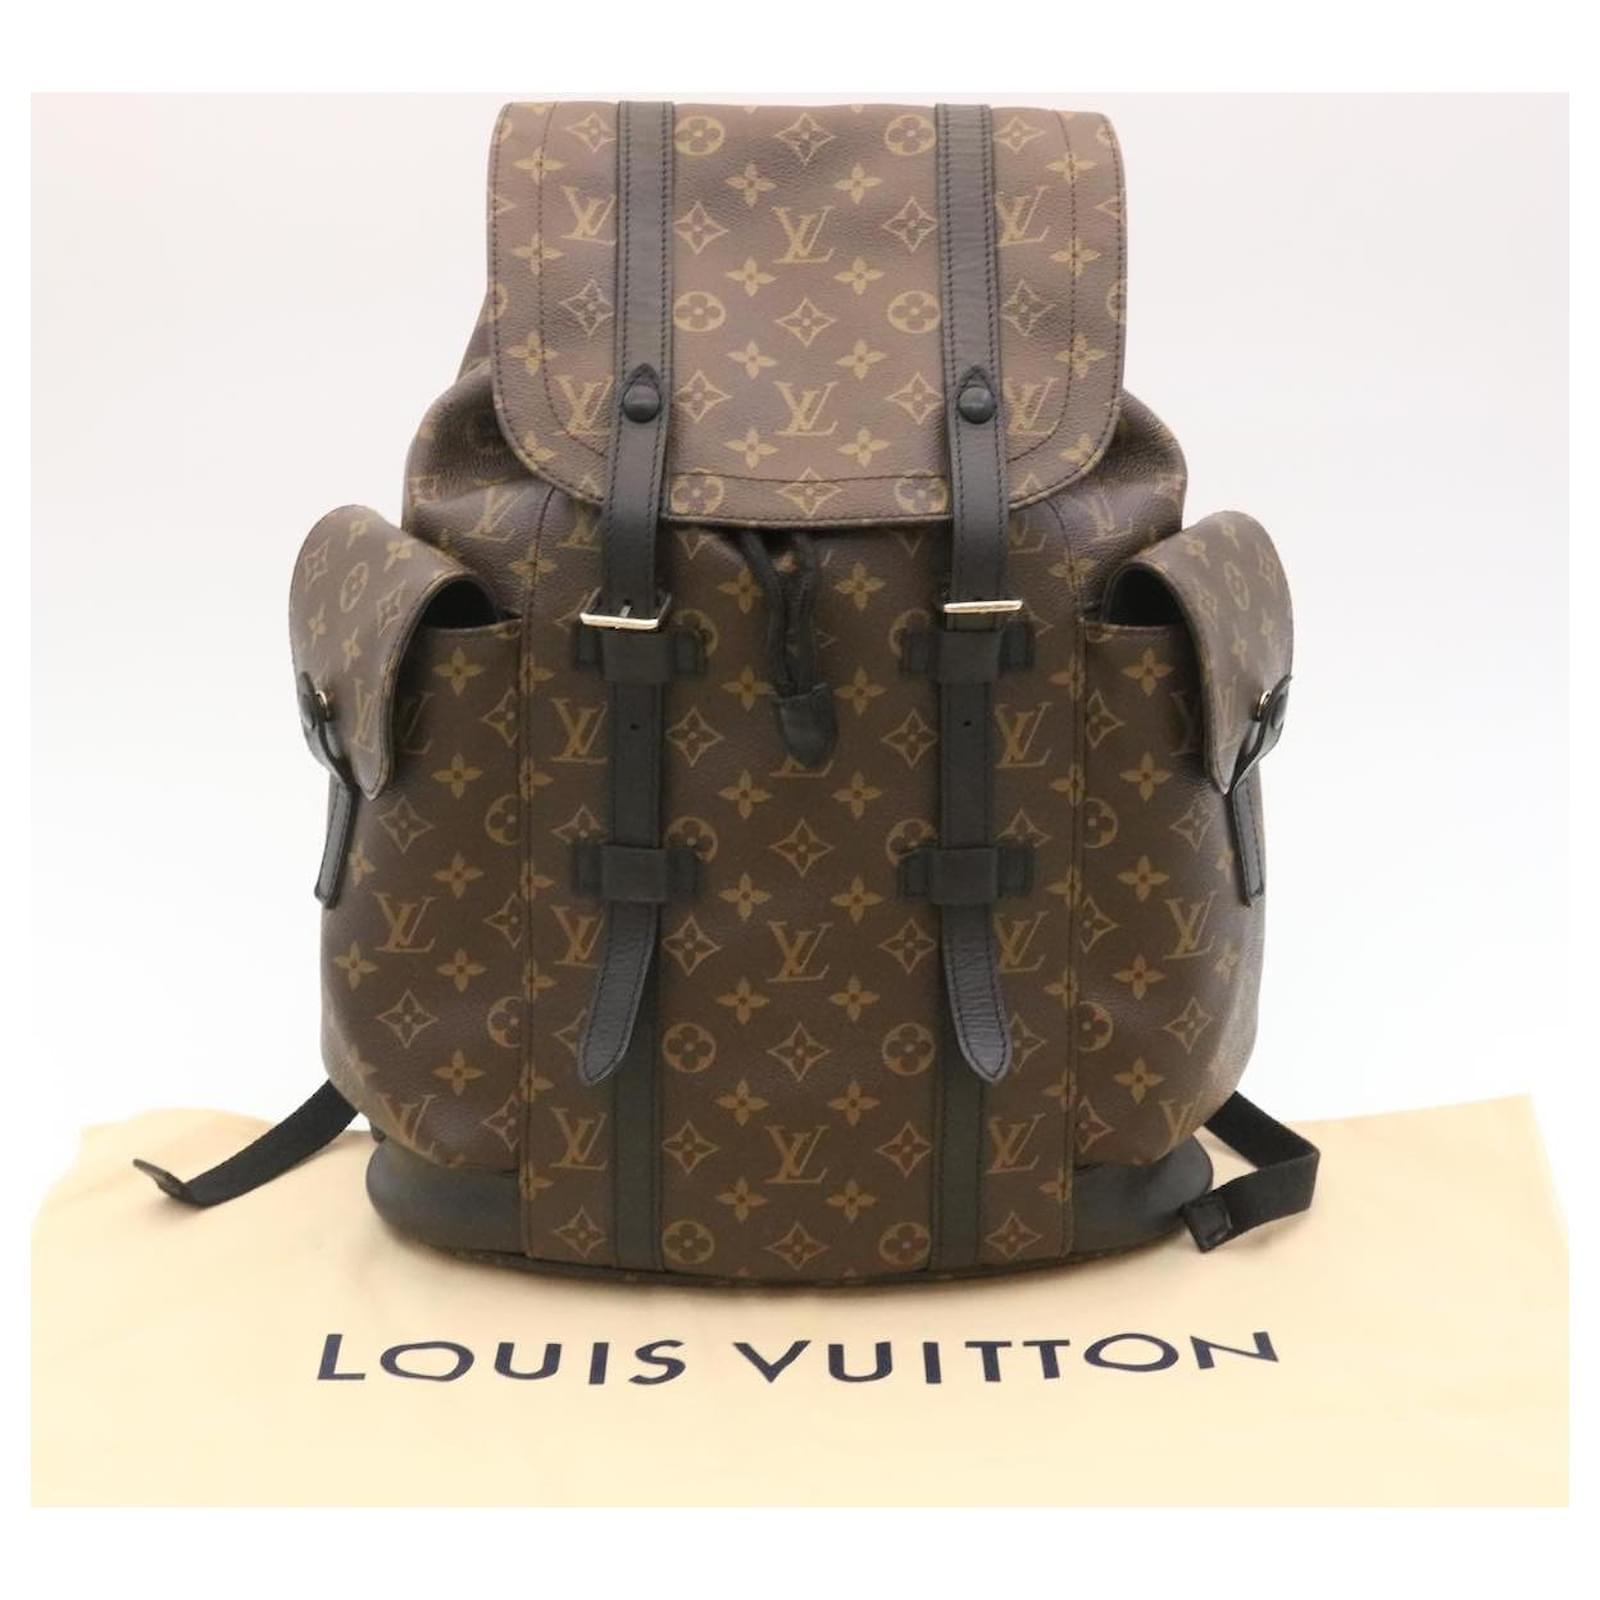 Shop Louis Vuitton CHRISTOPHER Christopher pm (M43735) by Sincerity_m639